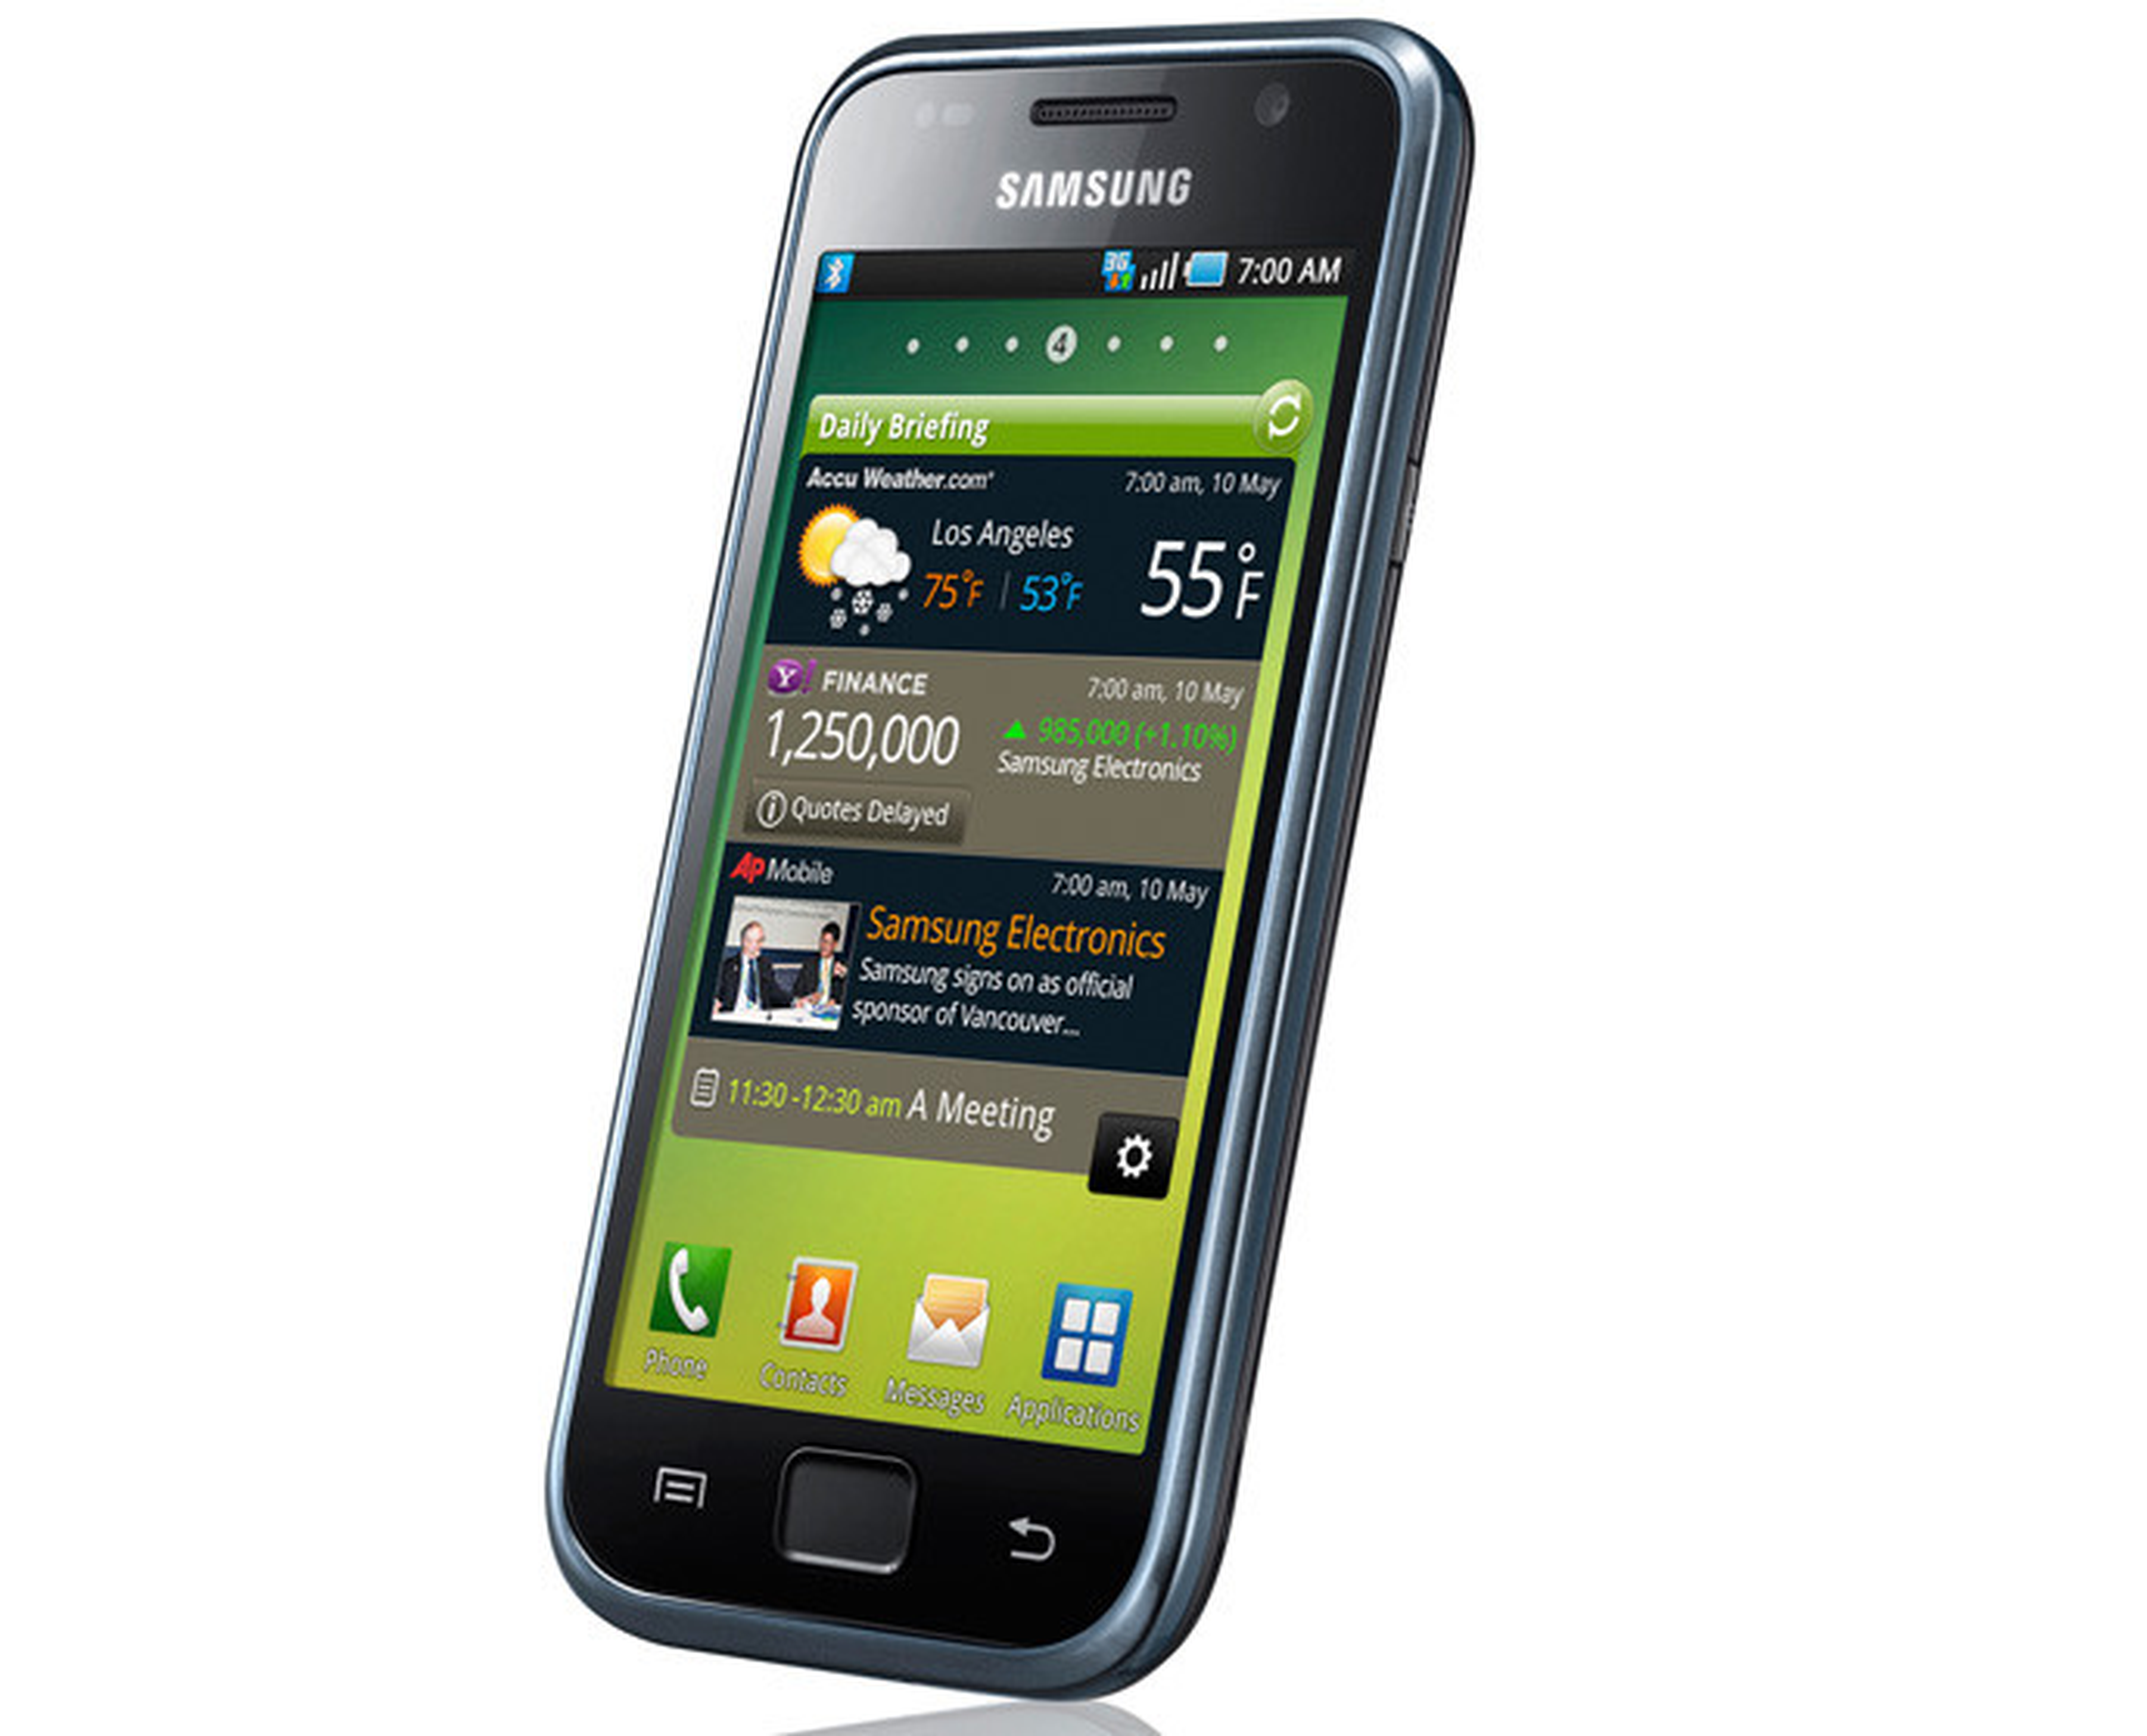 si jalea Cordero Todos los modelos de la gama Samsung Galaxy | Computer Hoy